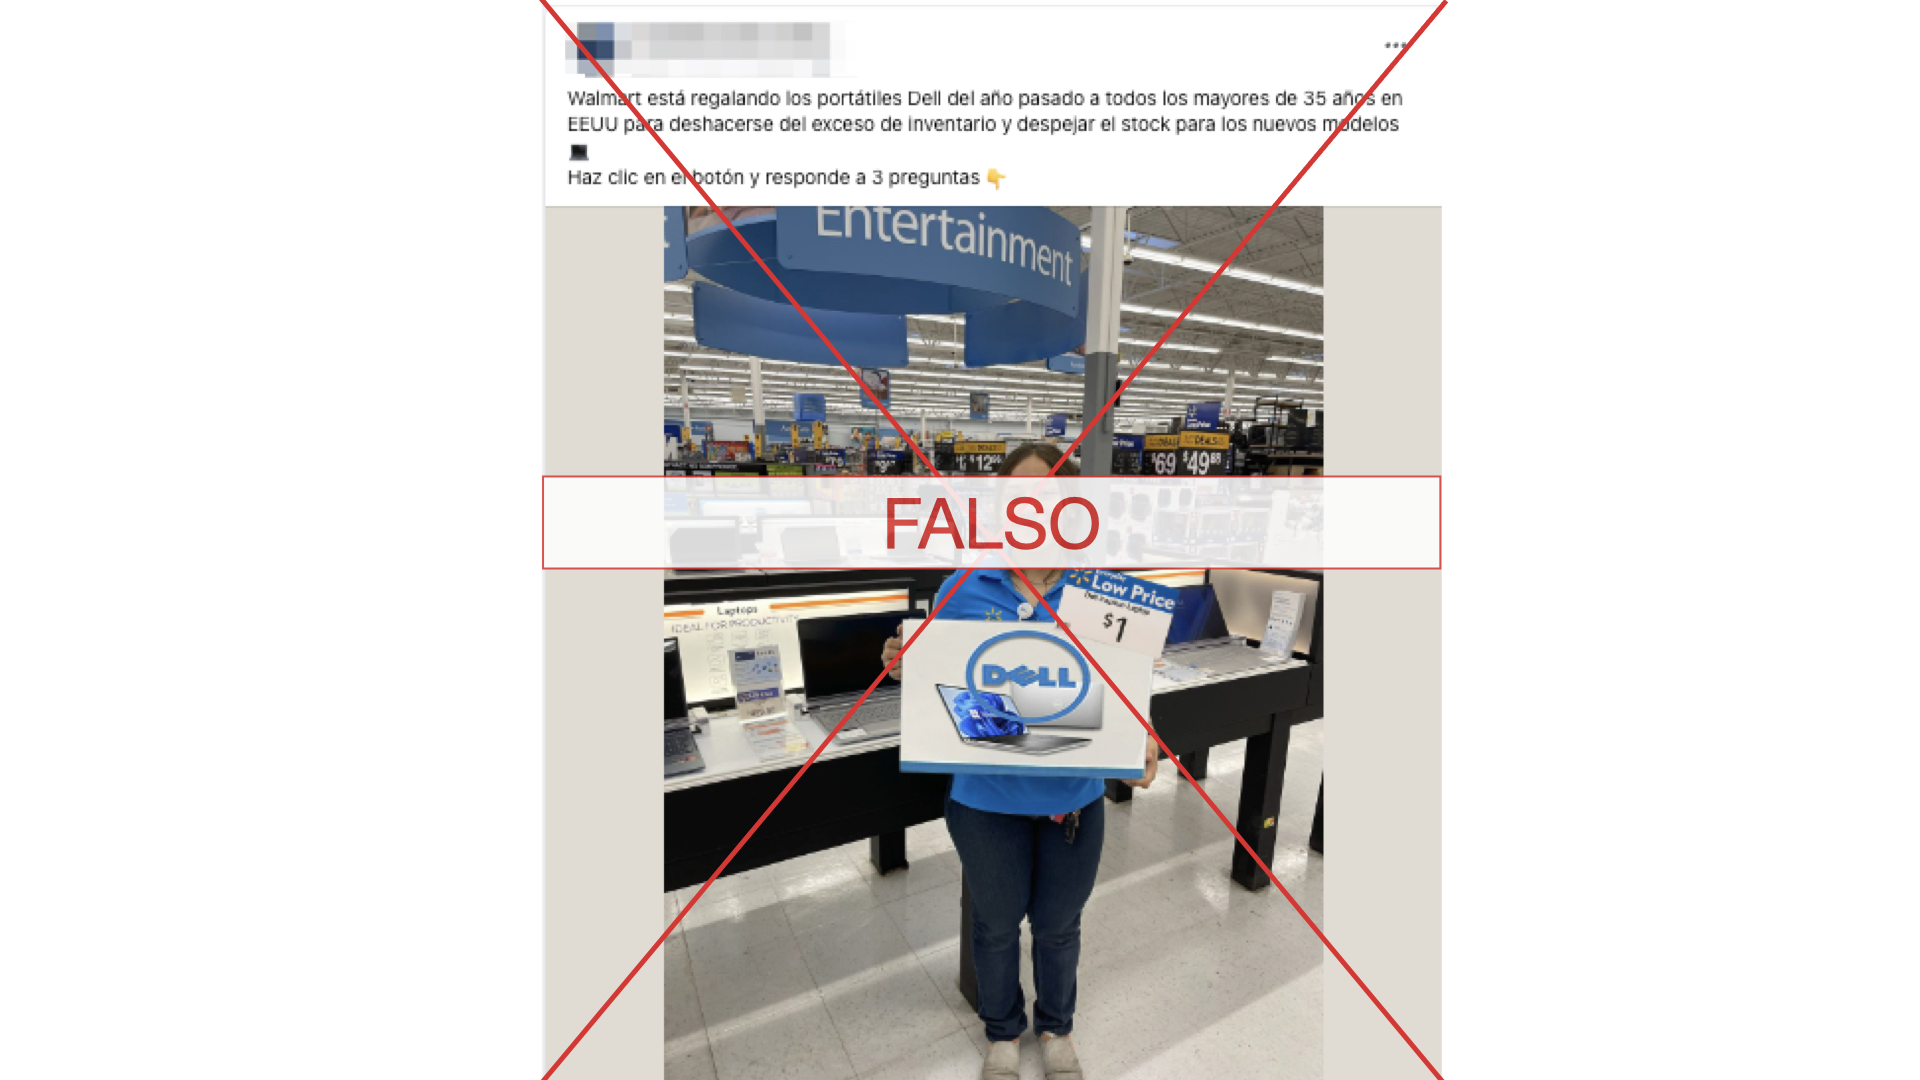 Fact Check: No, Walmart no regala laptops de la marca Dell en EE.UU.